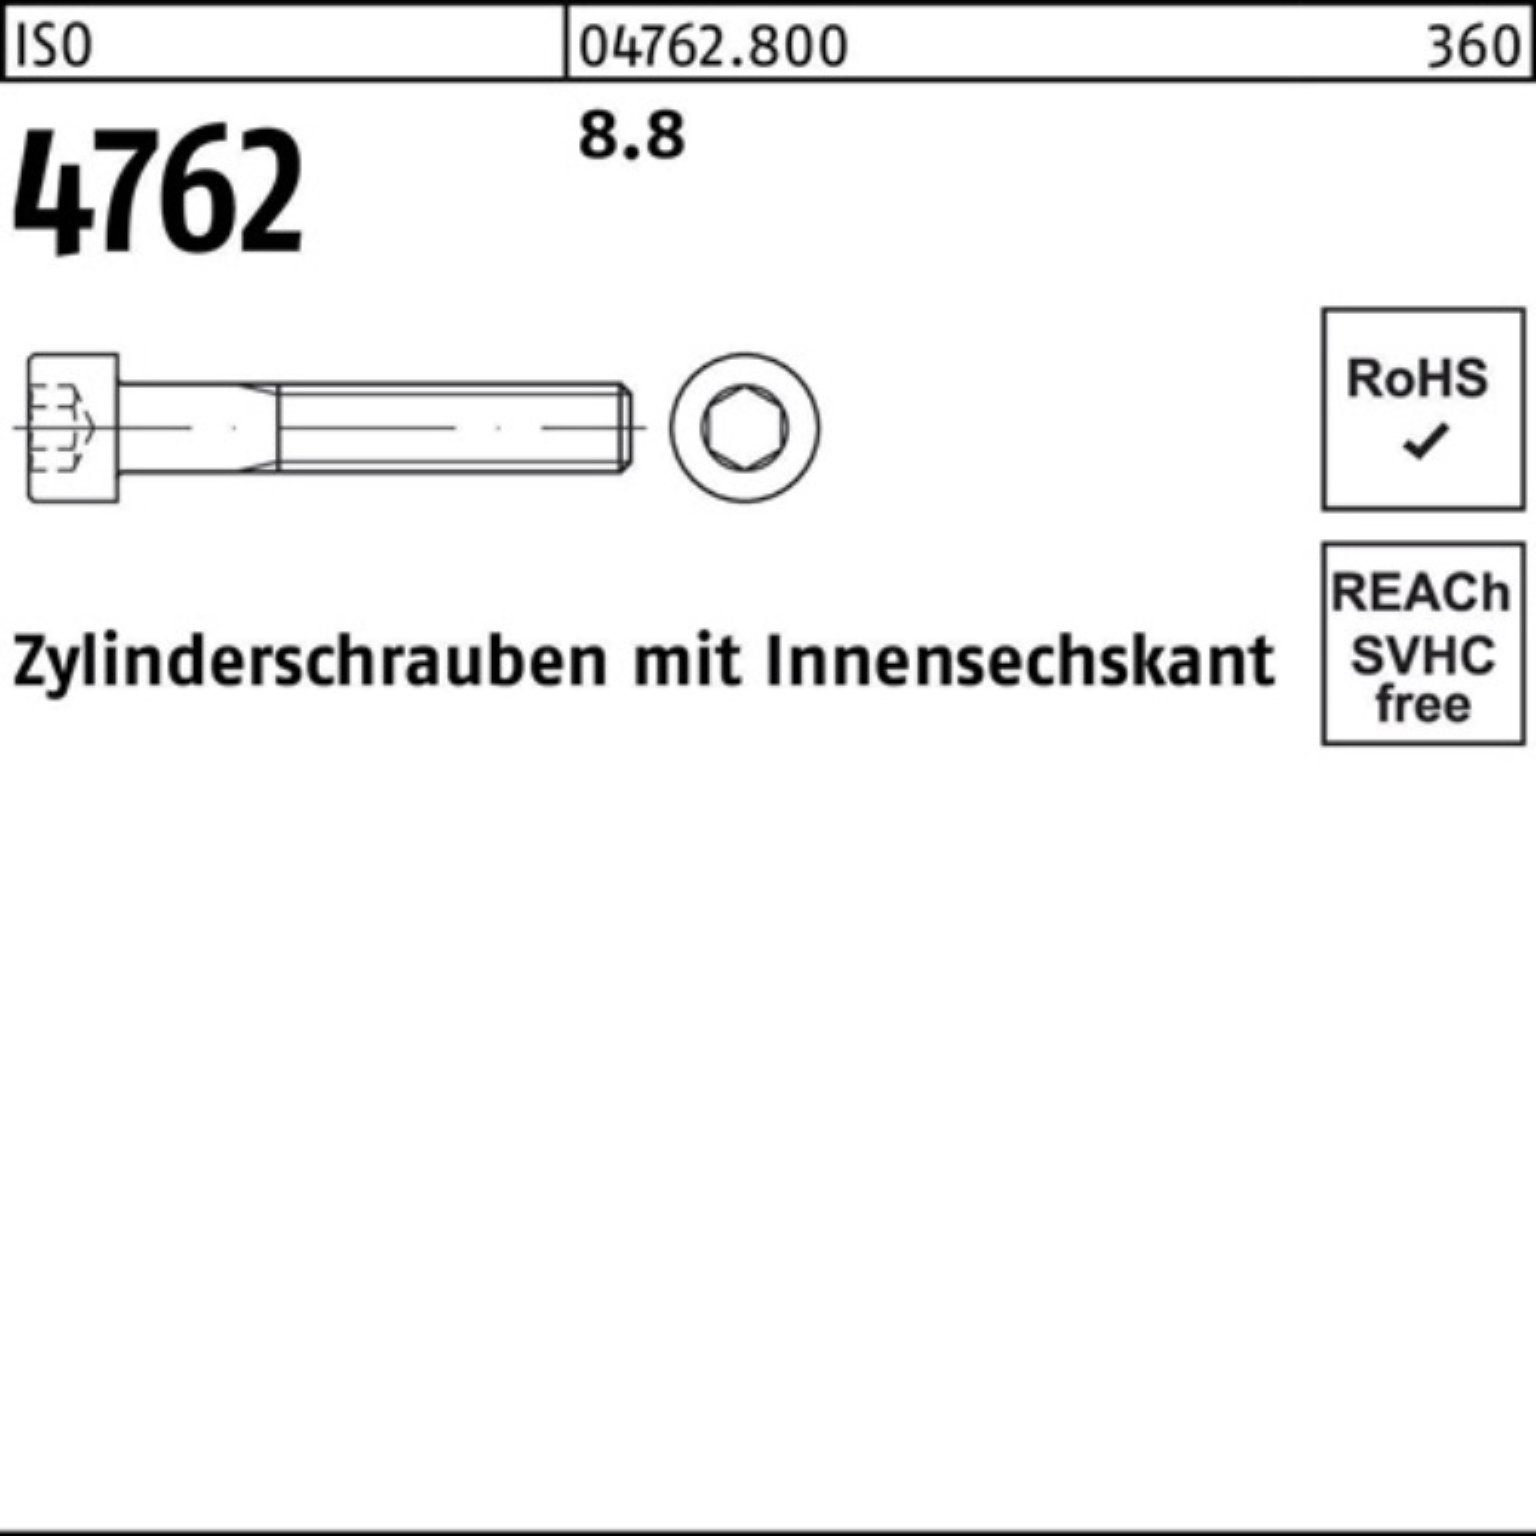 Reyher Pack 110 Innen-6kt 8.8 Zylinderschraube I Zylinderschraube 4762 ISO 100er Stück 1 M33x